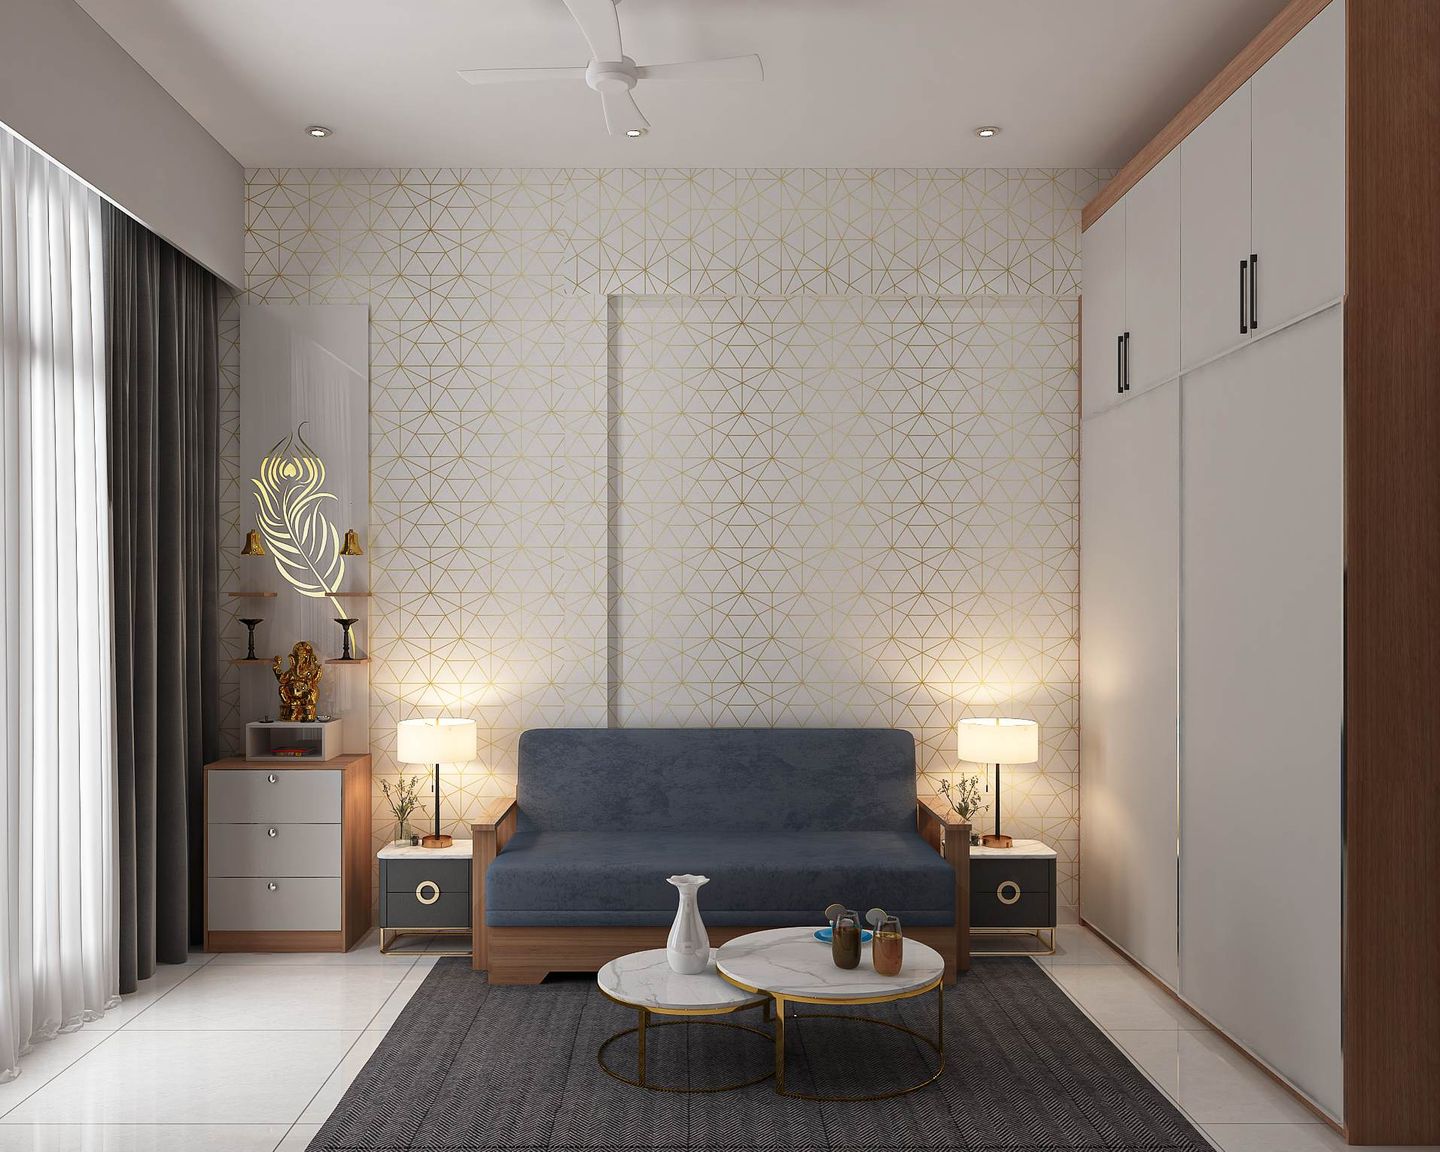 Guest Bedroom Design With Dark Blue Upholsterd Sofa - Livspace